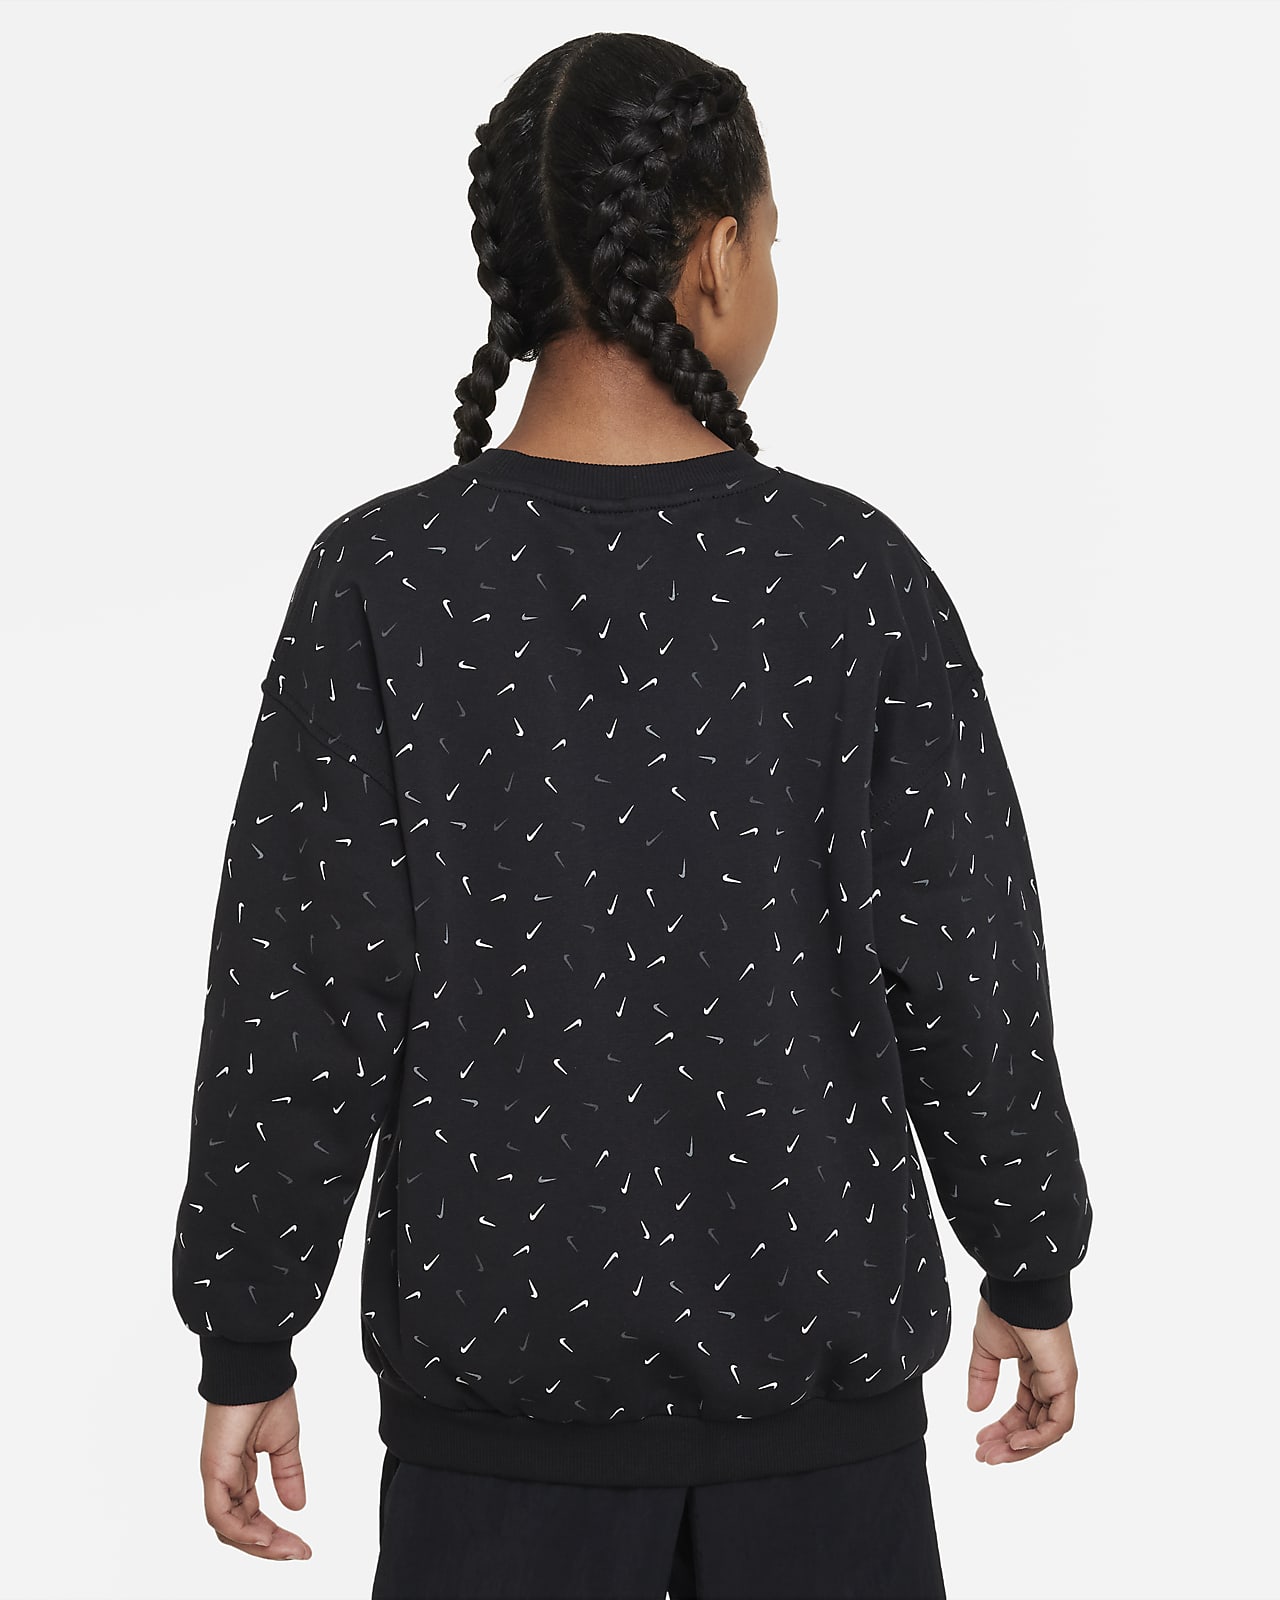 Kids\' Nike Nike (Girls\') Older Club Fleece LU Sportswear Sweatshirt. Oversized